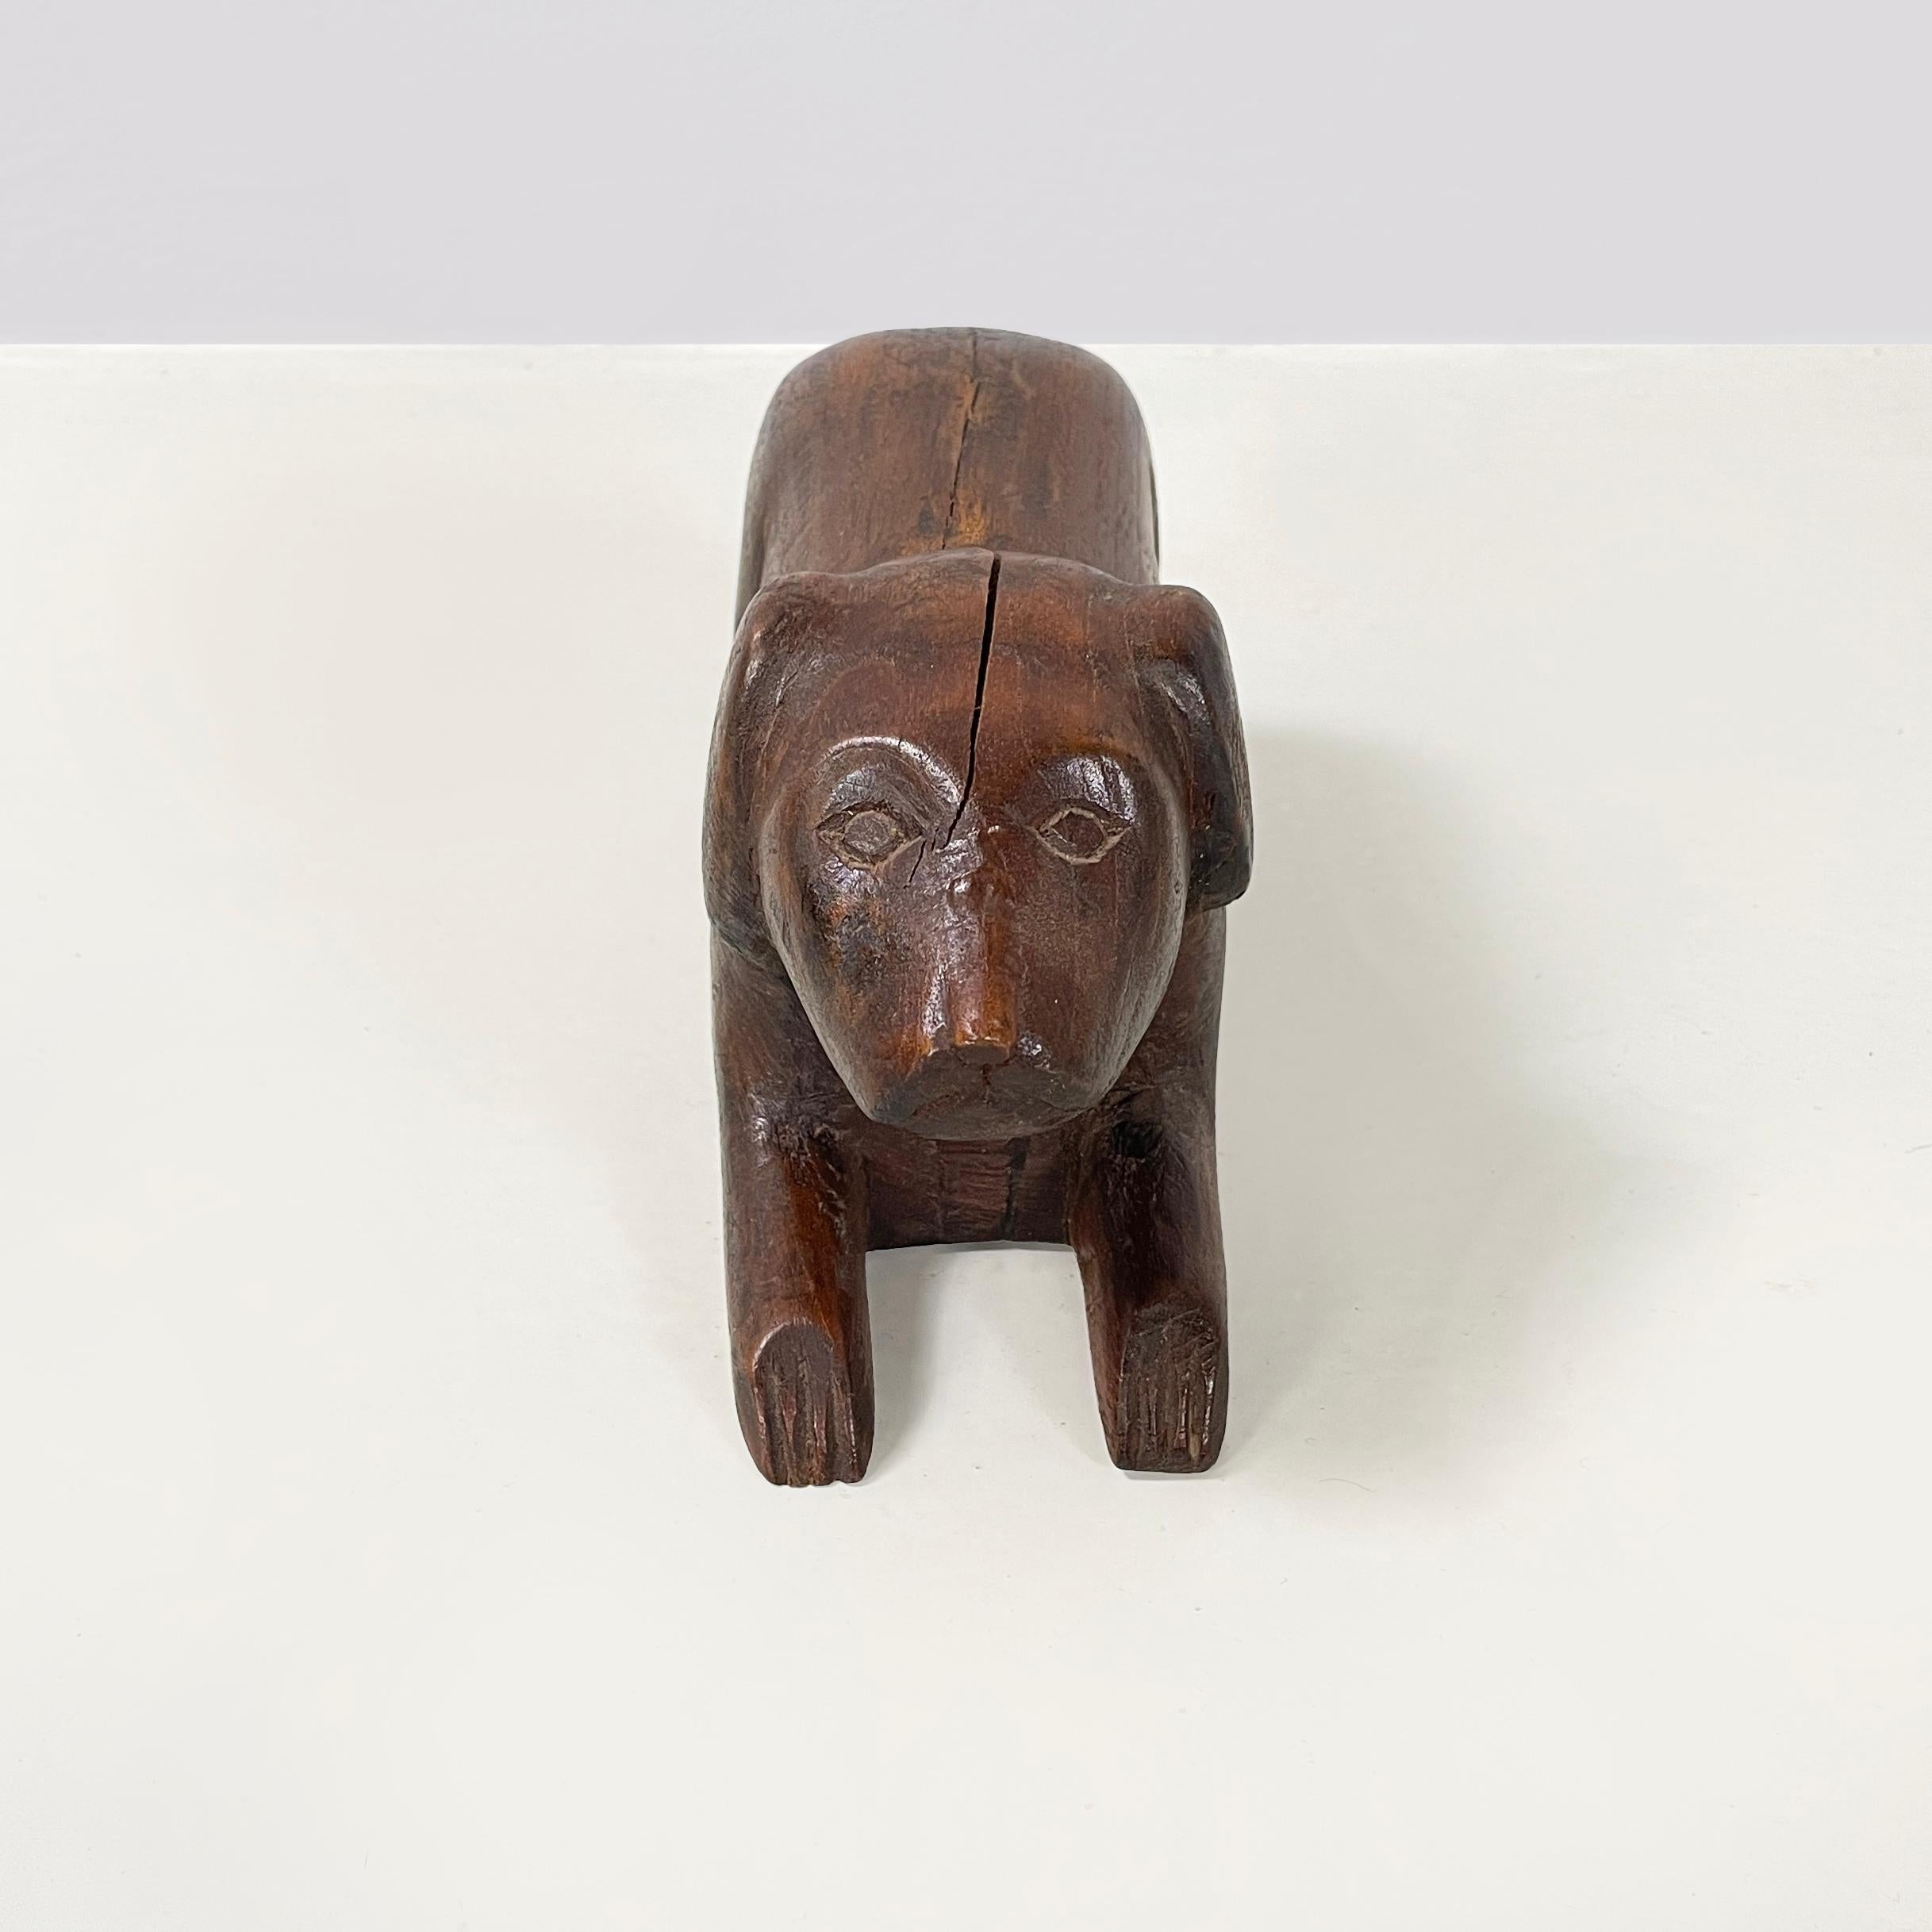 Chinesische antike Hundeschmuckschatulle aus Holz oder Objekthalter, 1920er Jahre
Schmuckkästchen mit einziehbarem Fach in Form eines liegenden Hundes, ganz aus dunklem Holz. Die Gesichtszüge des Hundes sind stilisiert. Das Schiebefach befindet sich